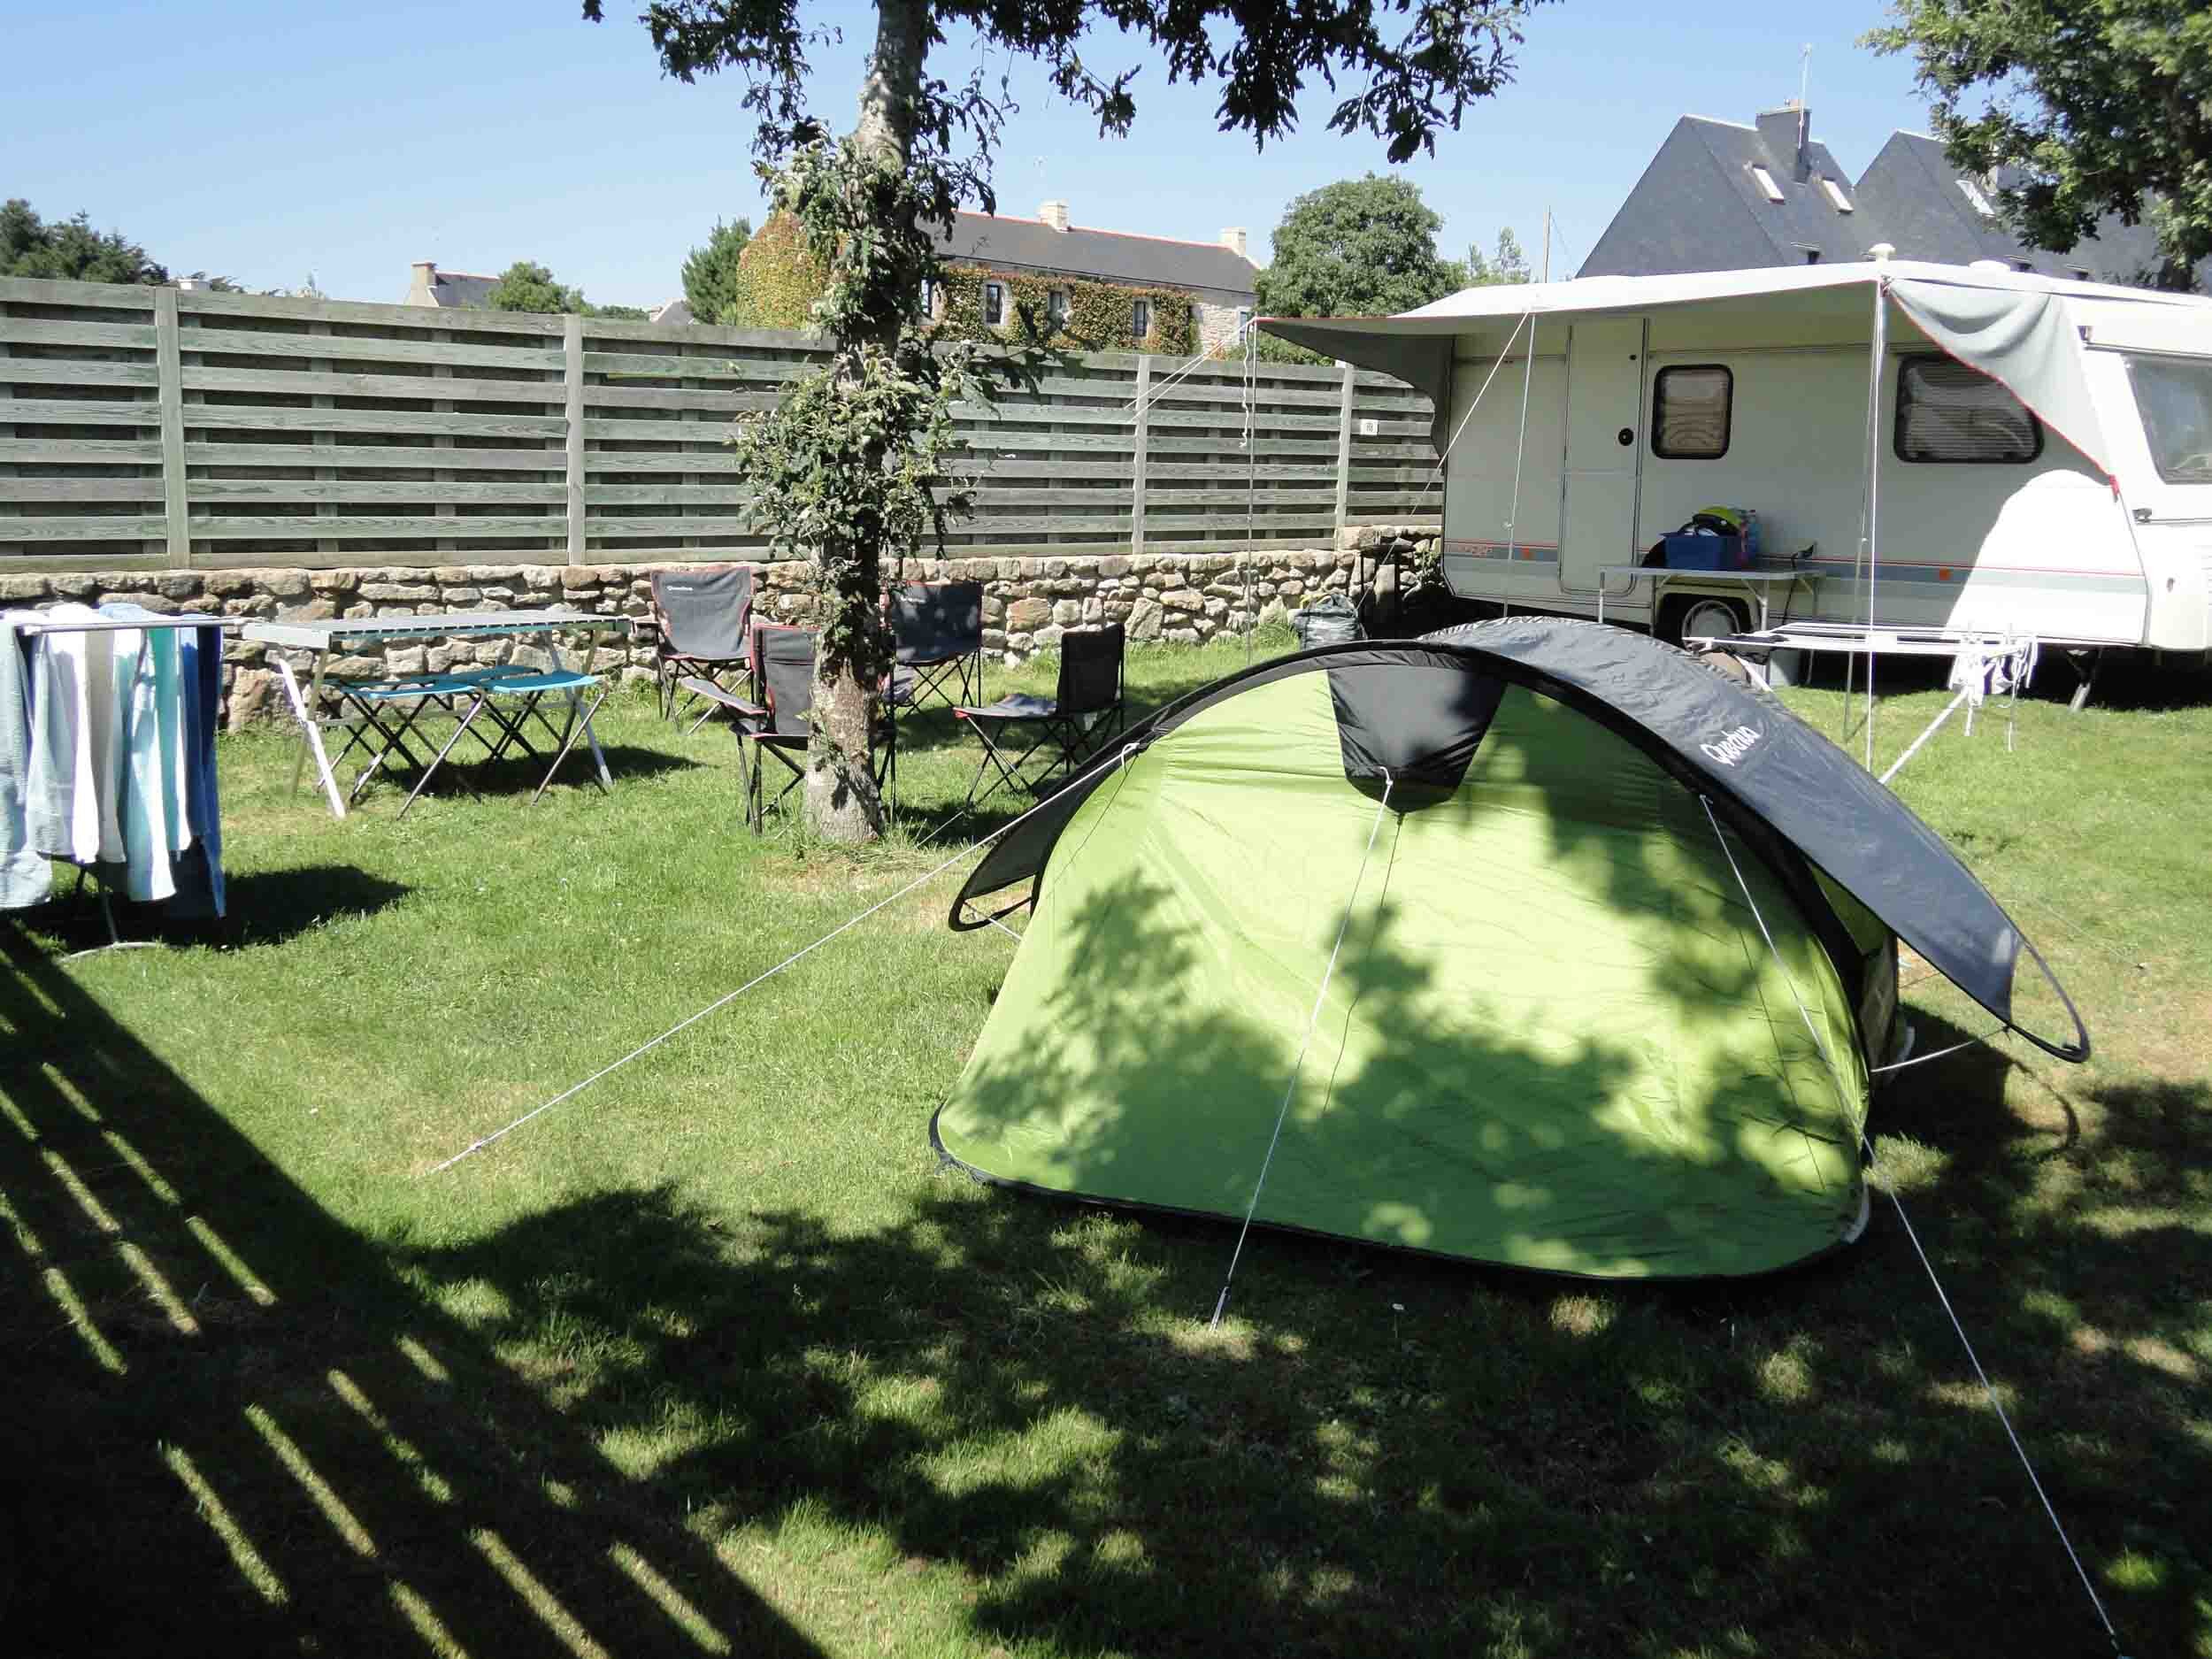 Le Camping 3 étoiles Les Druides à Carnac dispose d'emplacements avec éléctricité pour vos vacances en tente, caravane et camping car